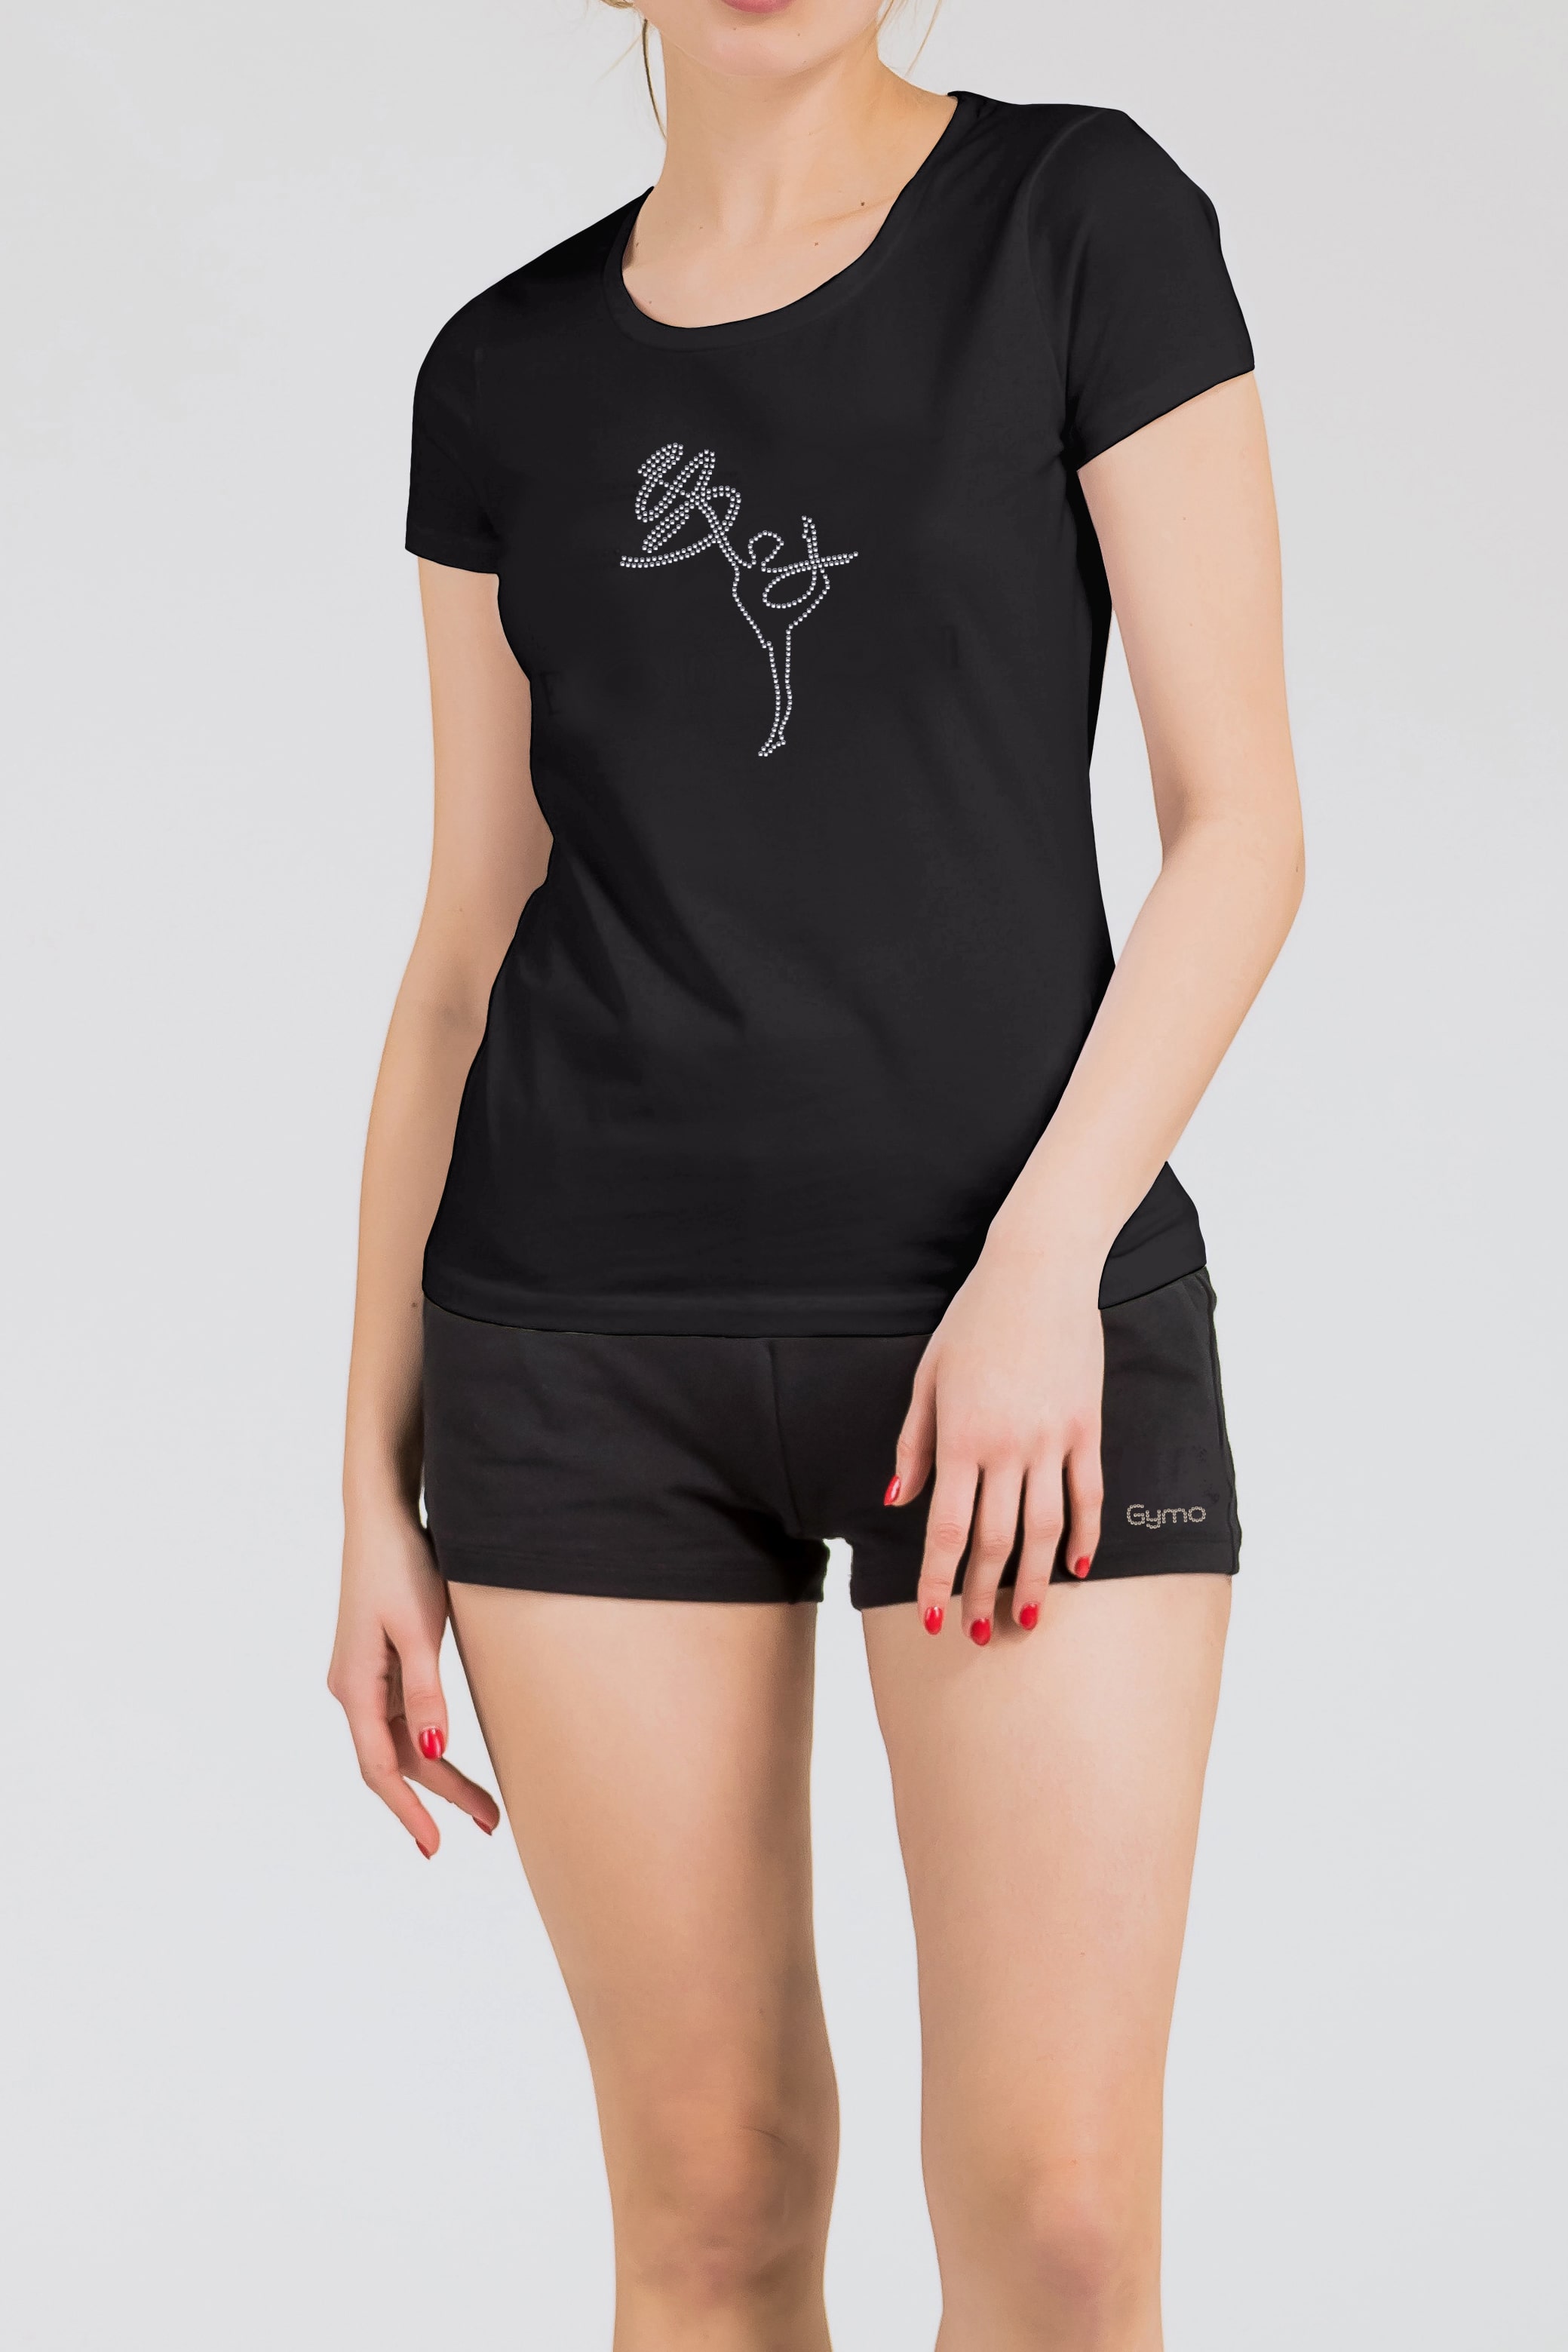 GYMO SPORTS - Gymo Sports Kurdeleli Kız T-Shirt